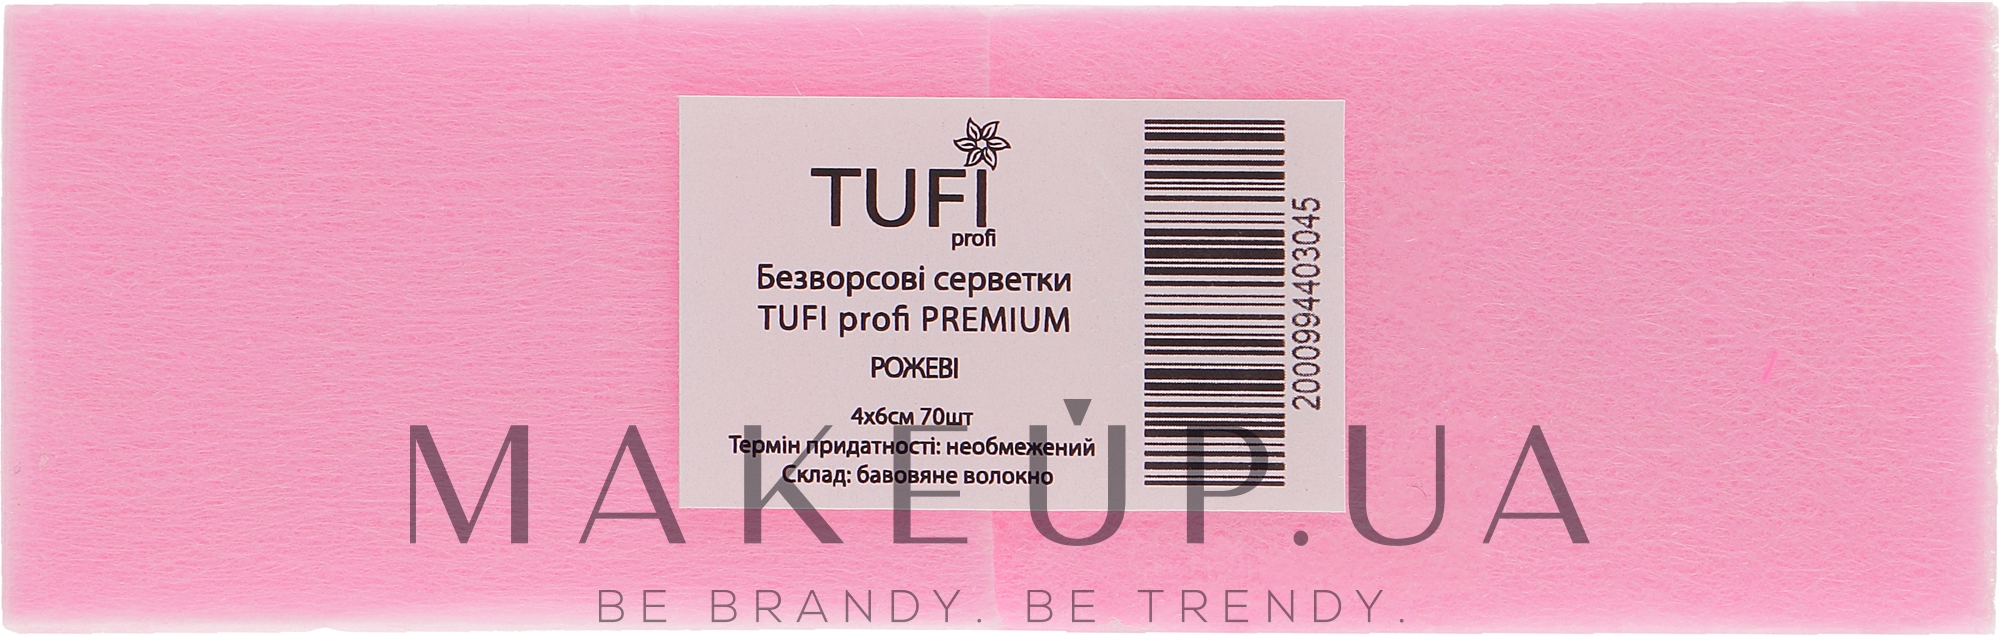 Безворсові серветки щільні, 4х6 см, 70 шт., рожеві - Tufi Profi Premium — фото 70шт